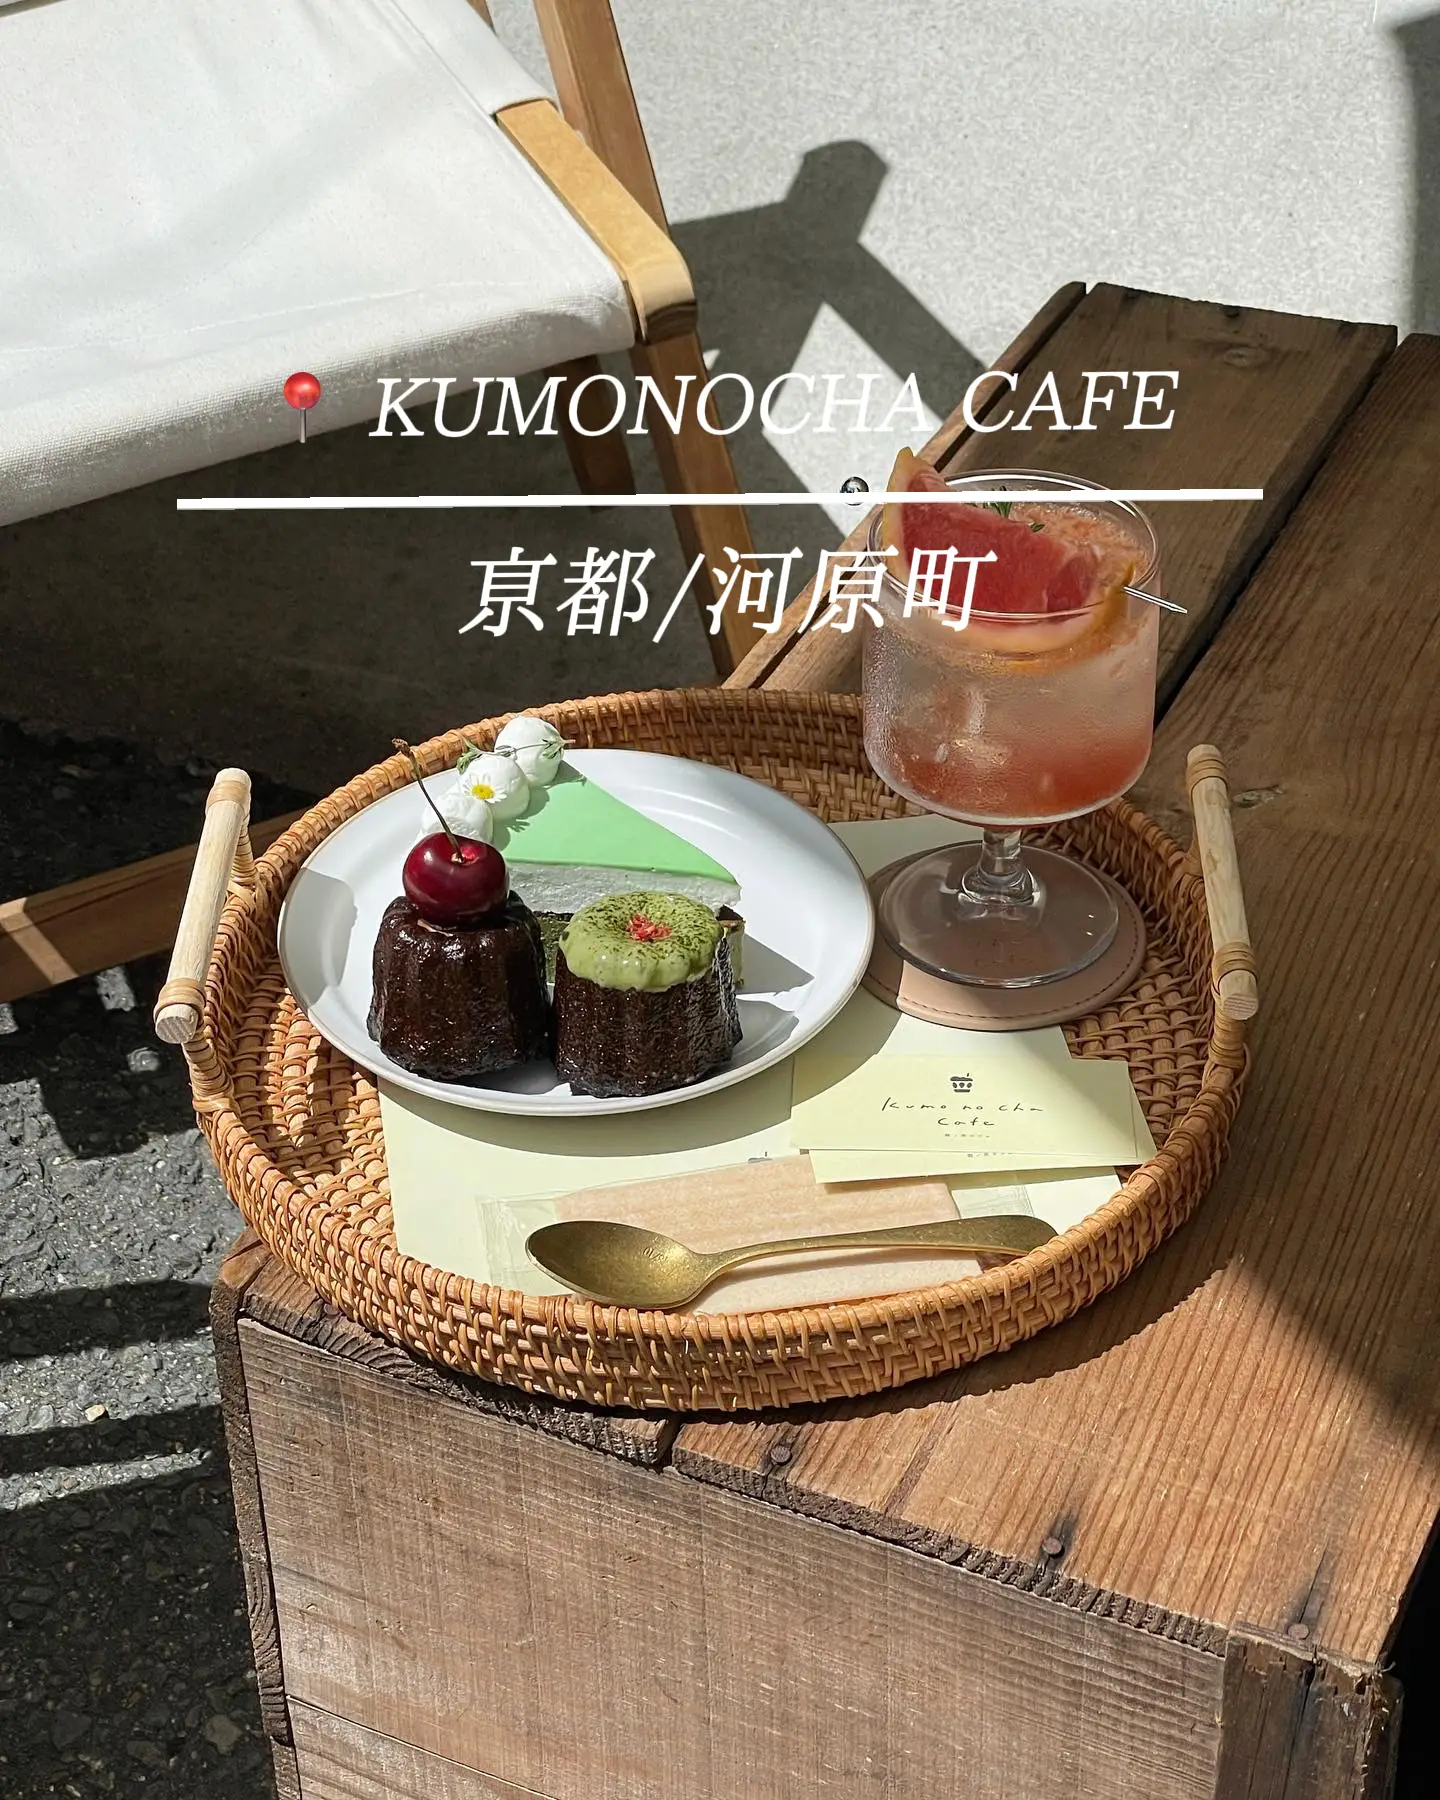 京都 河原町 雲ノ茶 Kumonocha Cafe 7月4日 Open うざみちゃんが投稿したフォトブック Lemon8